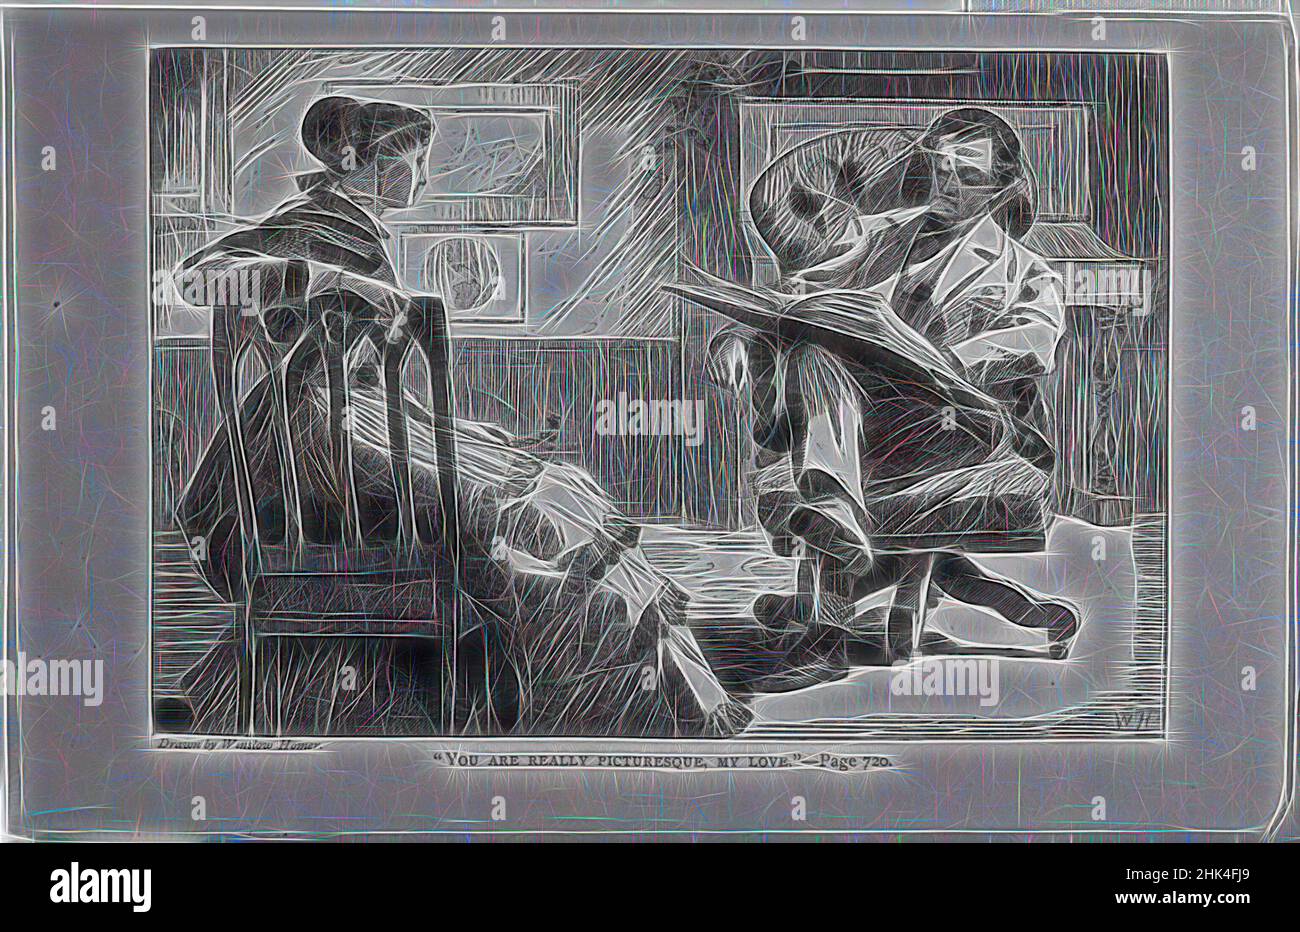 Inspiriert von You are Really Picturesque, My Love', Winslow Homer, Amerikaner, 1836-1910, Holzstich, 1868, Bild: 4 3/4 x 6 7/8 in., 12,1 x 17,5 cm, 1868, sitzende Figuren, Winslow Homer, neu erfunden von Artotop. Klassische Kunst neu erfunden mit einem modernen Twist. Design von warmen fröhlichen Leuchten der Helligkeit und Lichtstrahl Strahlkraft. Fotografie inspiriert von Surrealismus und Futurismus, umarmt dynamische Energie der modernen Technologie, Bewegung, Geschwindigkeit und Kultur zu revolutionieren Stockfoto